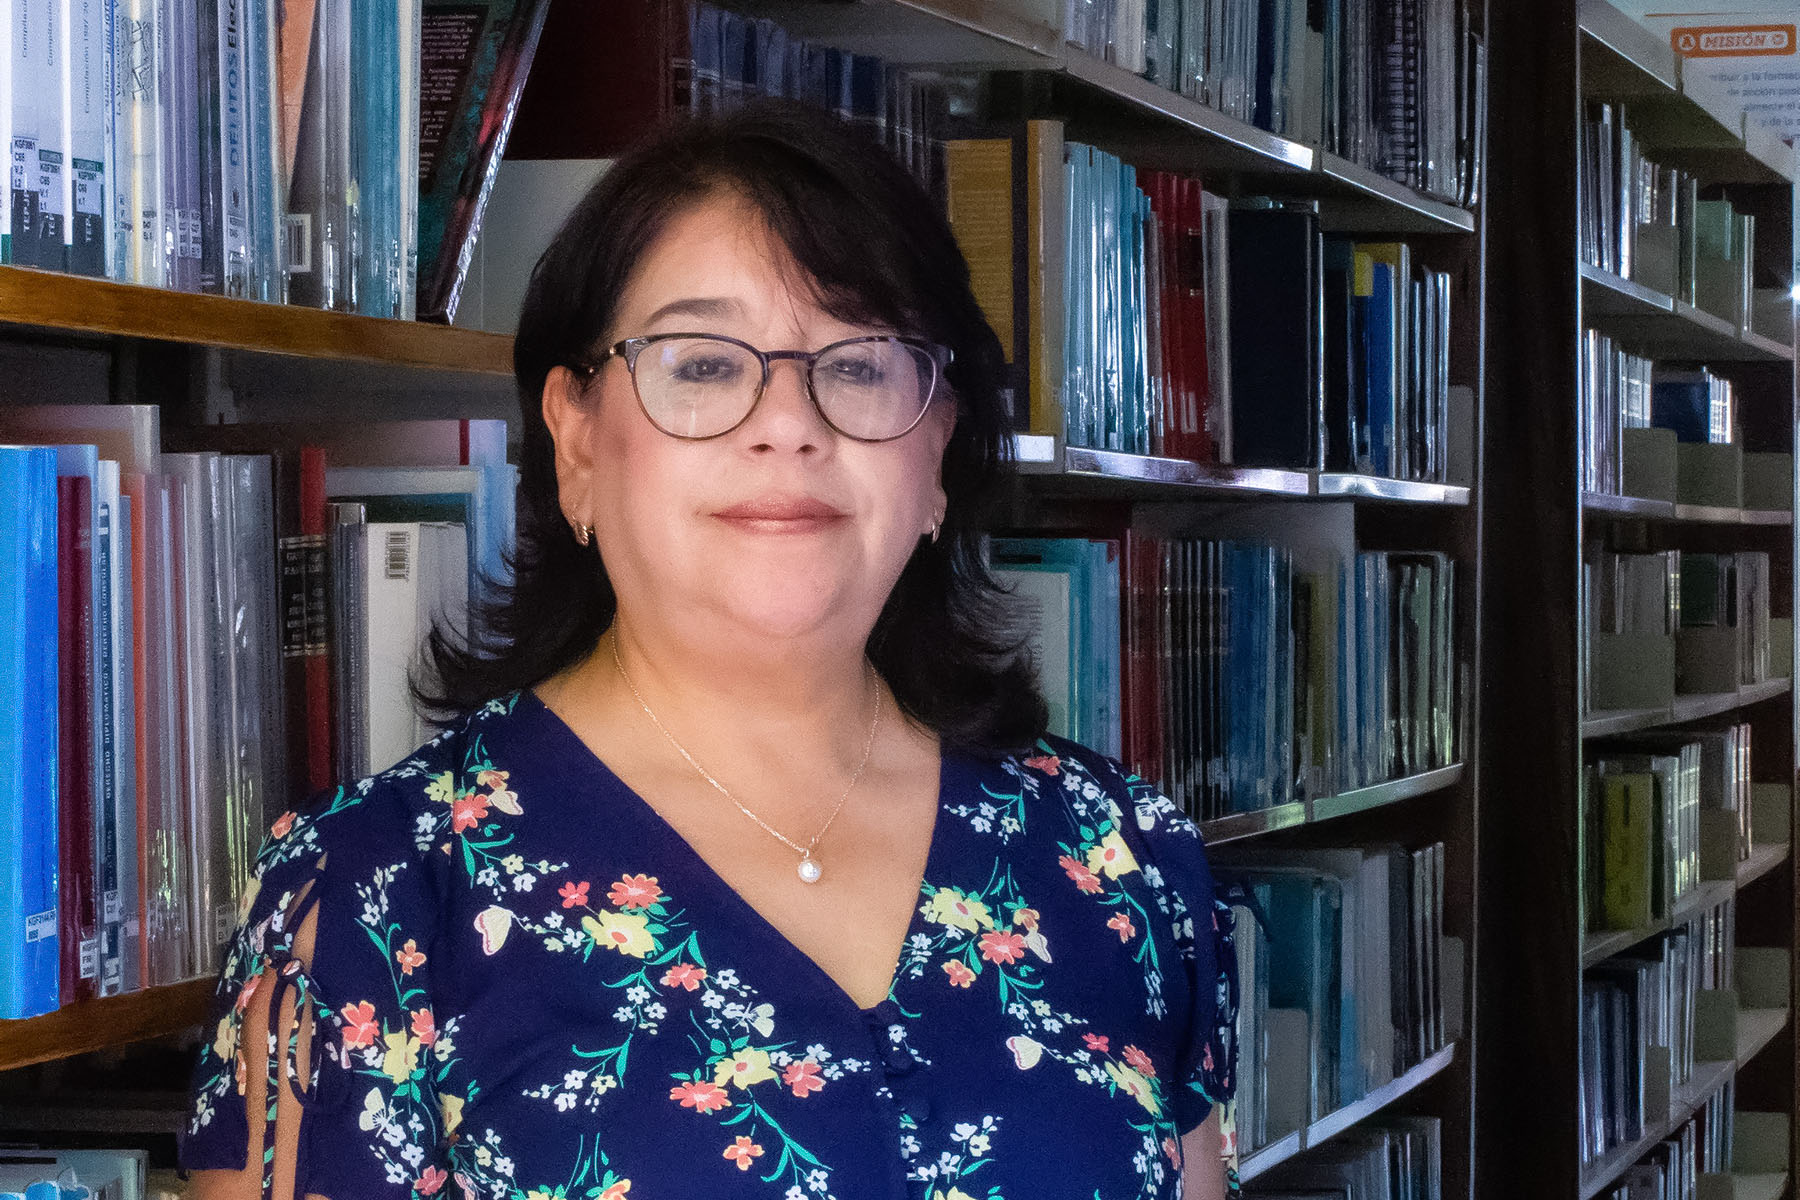 1 / 1 - Mtra. Sandra Luz Rodríguez Ortiz, coordinadora de la Biblioteca Anáhuac Veracruz